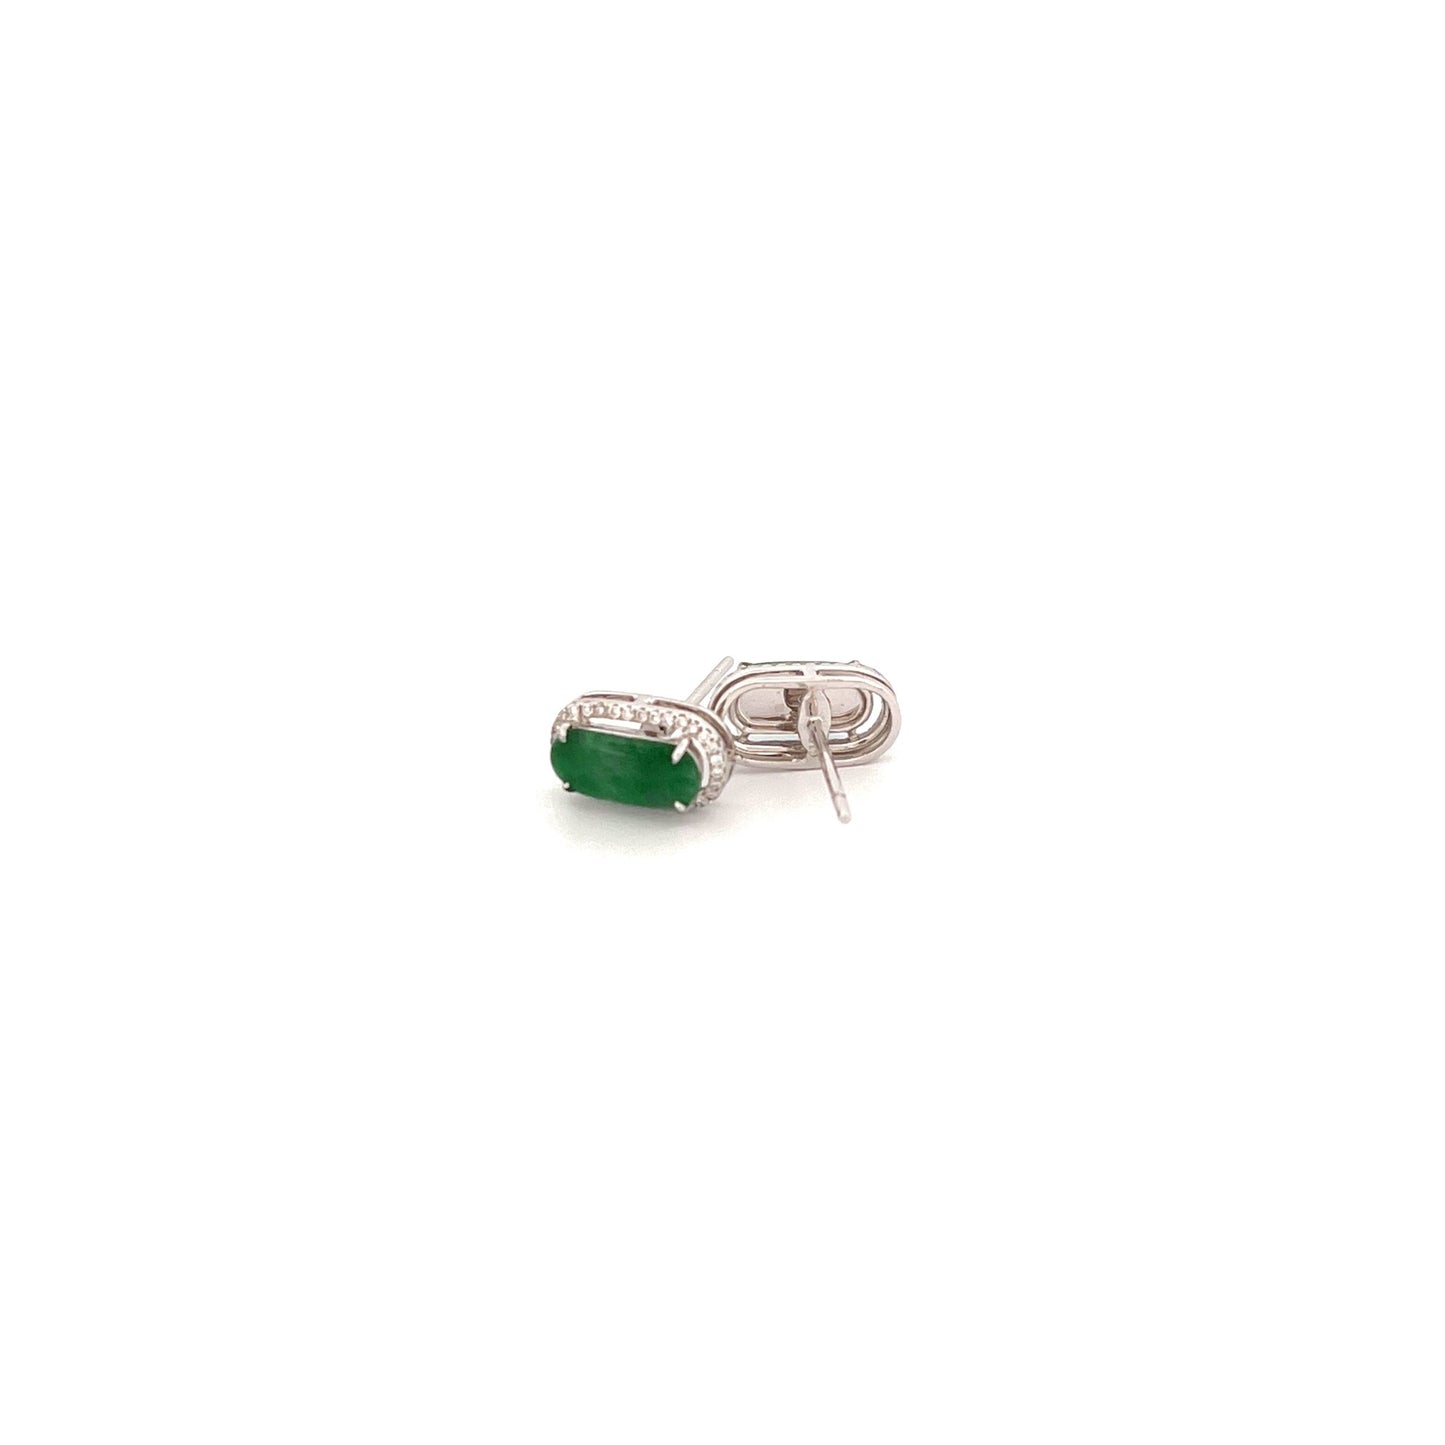 耳環 - 陽綠色馬鞍面天然翡翠配鑽石18K白色金耳環 - 雅玉珠寶